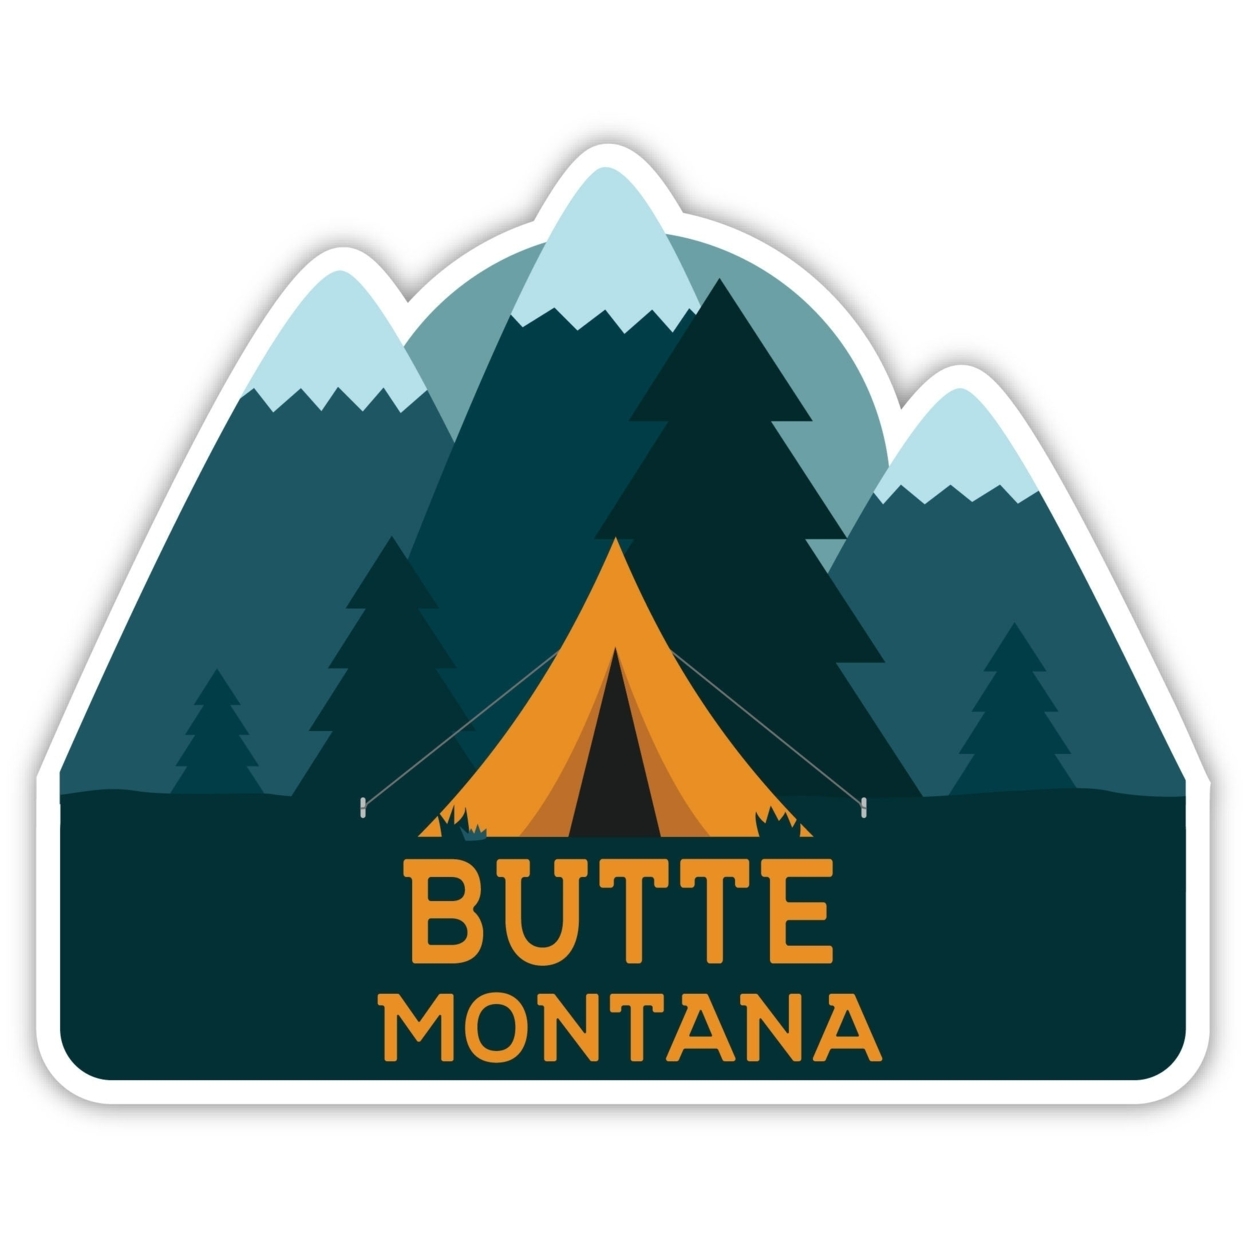 Butte Montana Souvenir Decorative Stickers (Choose Theme And Size) - Single Unit, 4-Inch, Tent